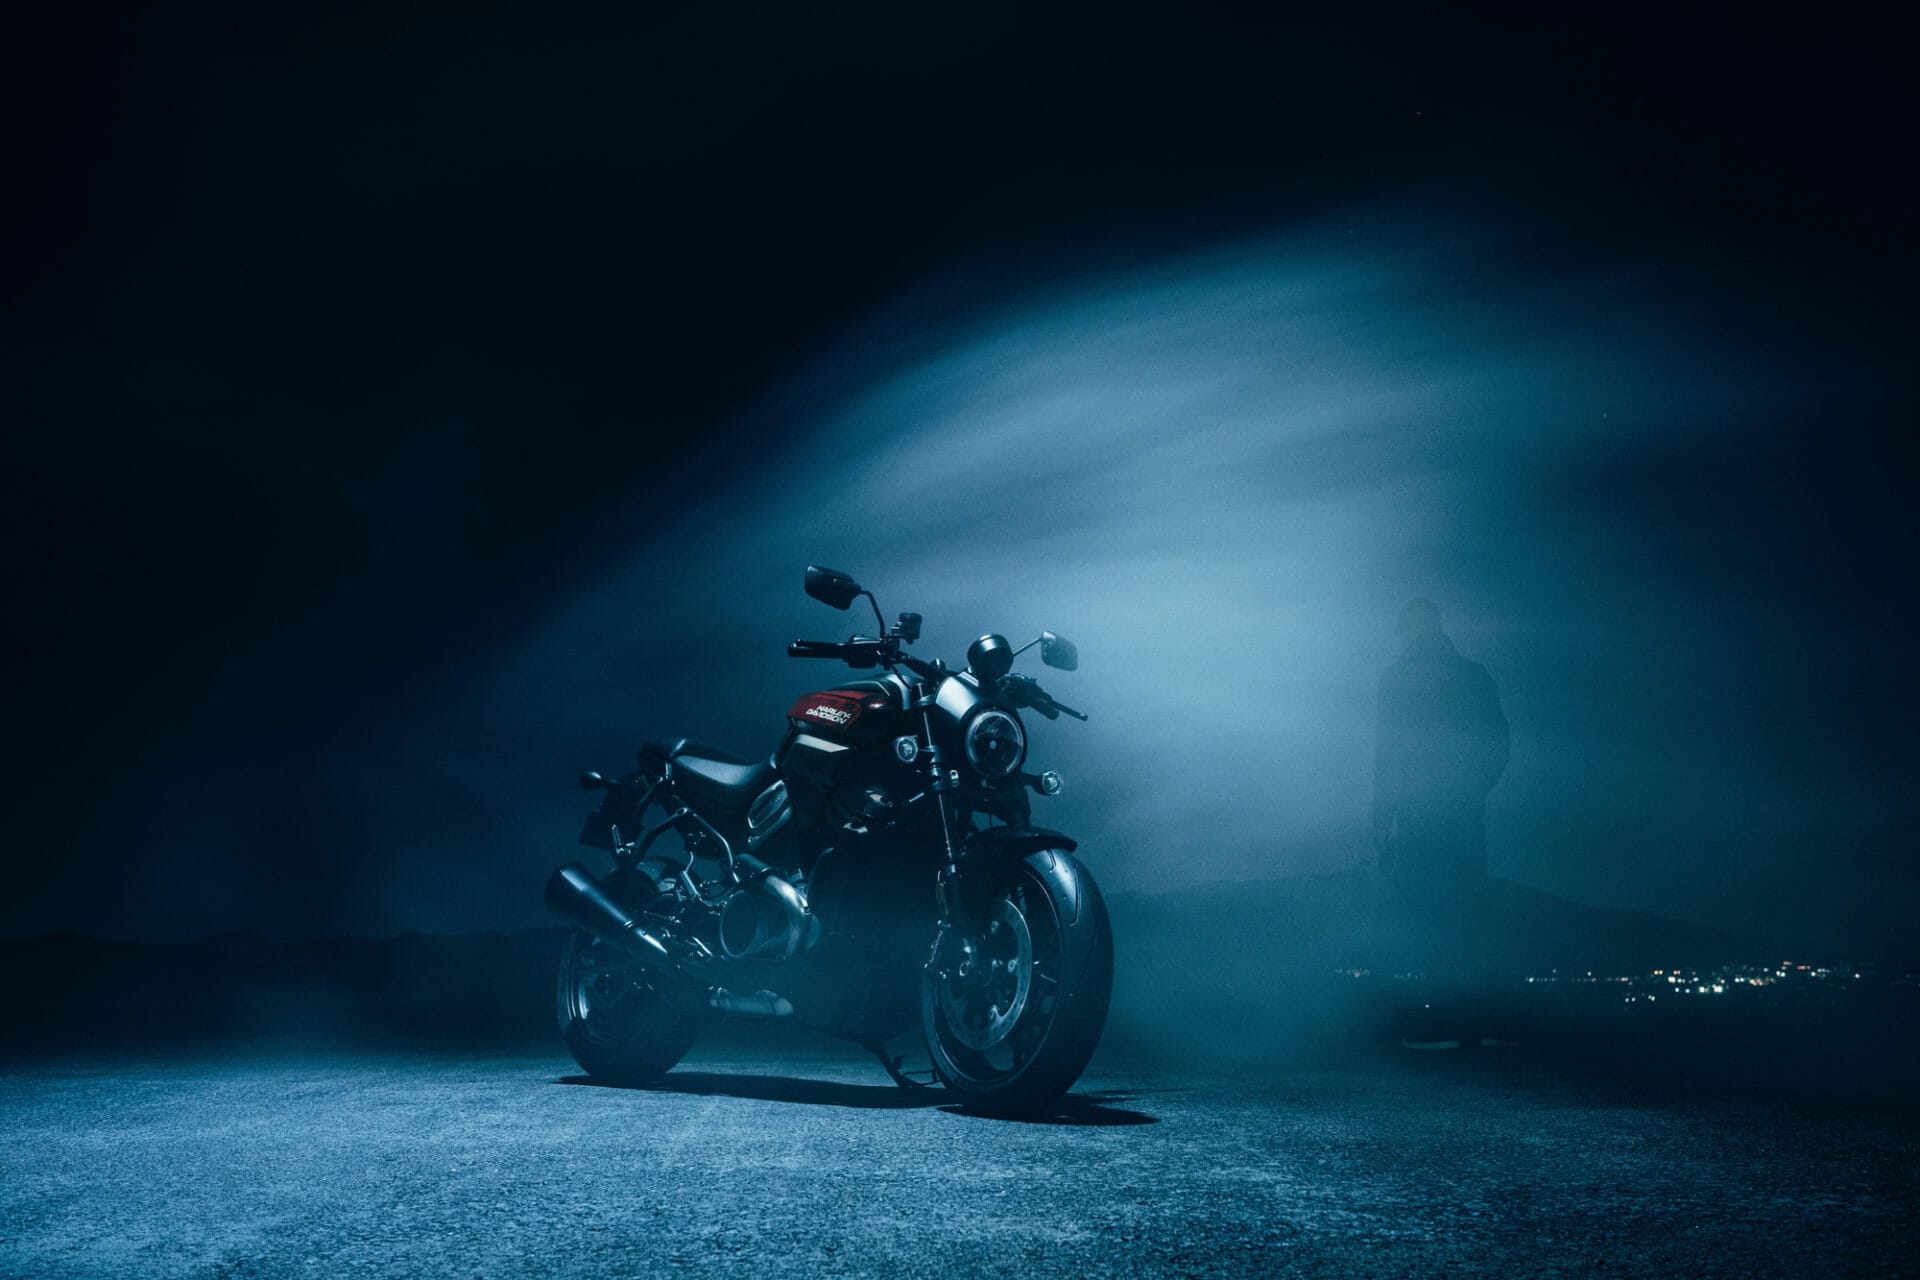 Harley Davidson announces details of new corporate strategy
- auch in der MOTORRAD NACHRICHTEN APP